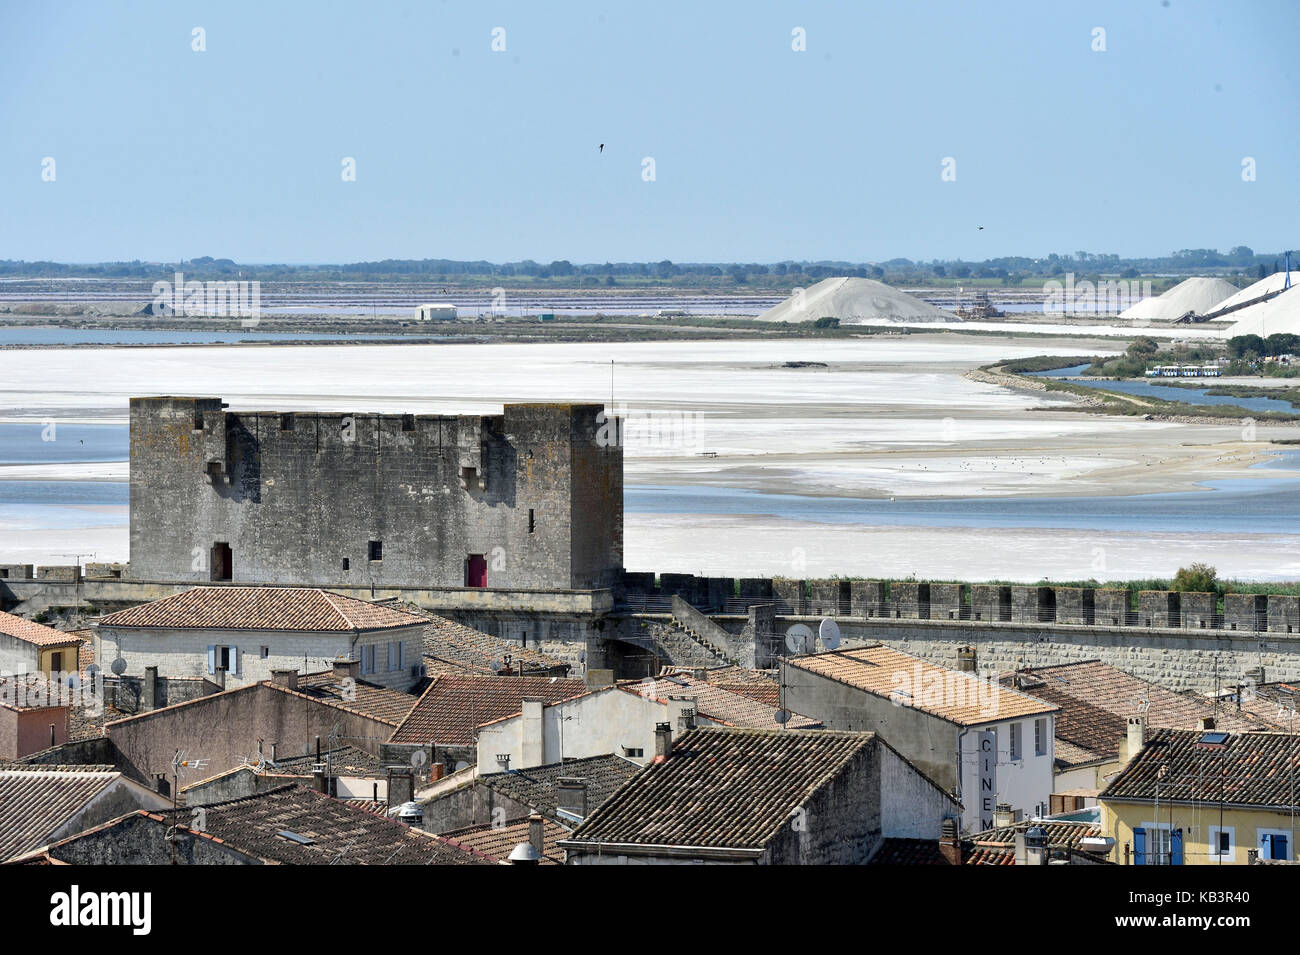 La France, gard, Aigues-mortes, cité médiévale, remparts et fortifications encerclent la ville et les grands salins du midi Banque D'Images